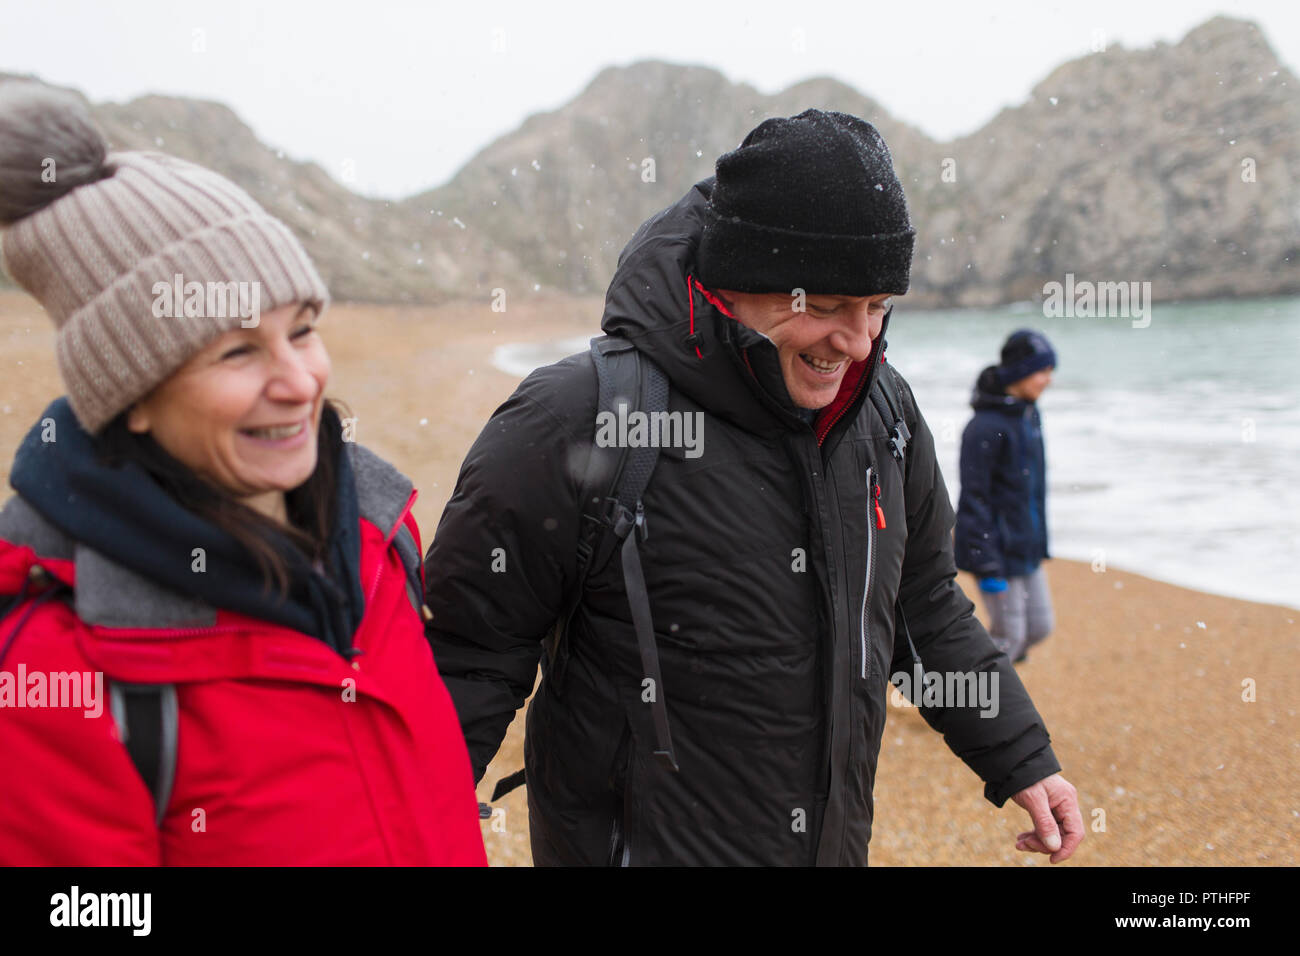 Smiling couple dans des vêtements chauds d'hiver enneigés sur beach Banque D'Images